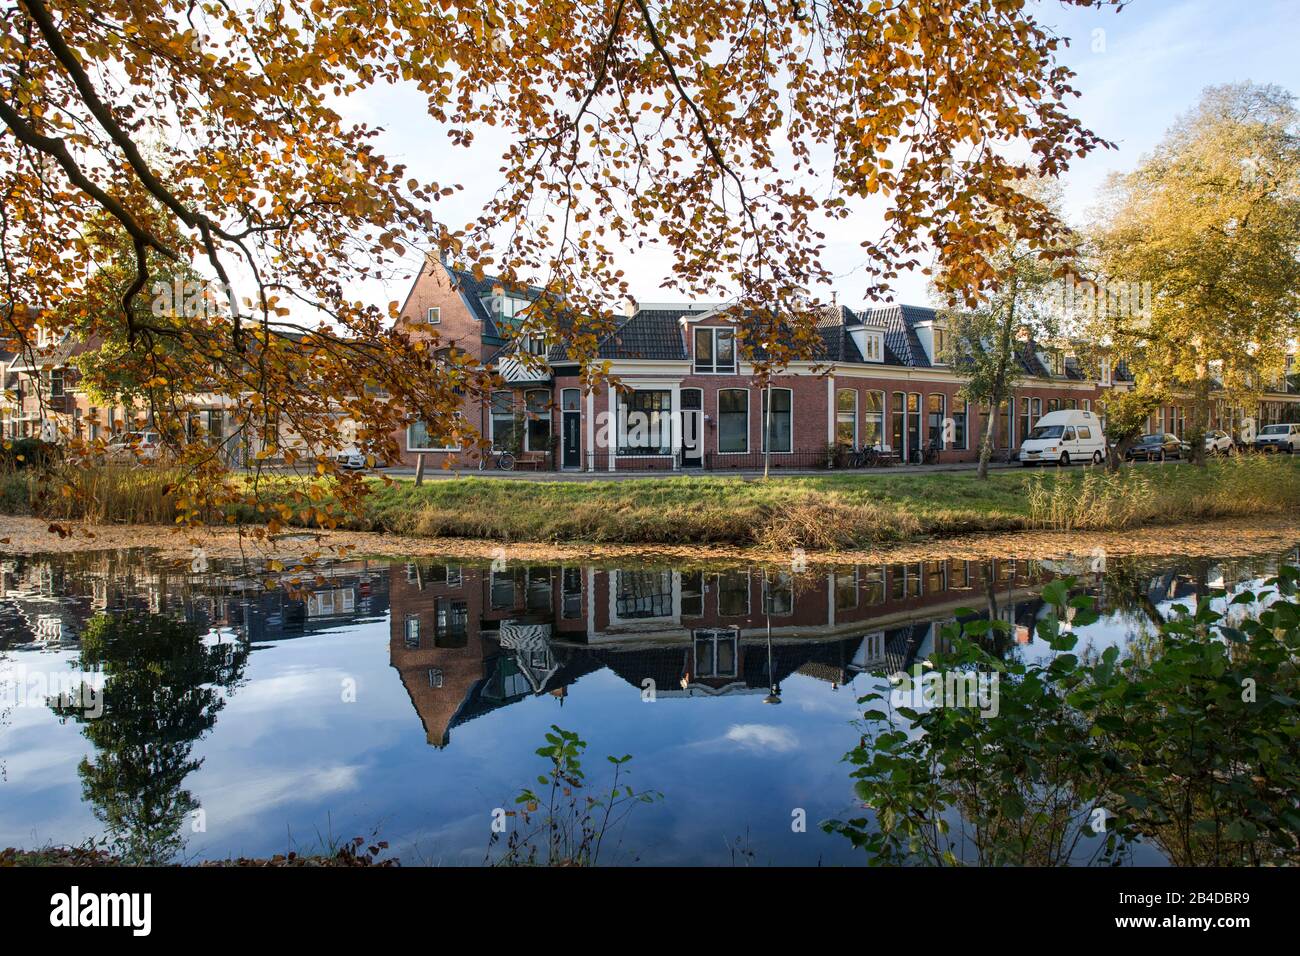 Europa, Niederlande, Groningen: Blick vom Park Noorderplantsoen zu den Häusern am anderen Ufer Stockfoto